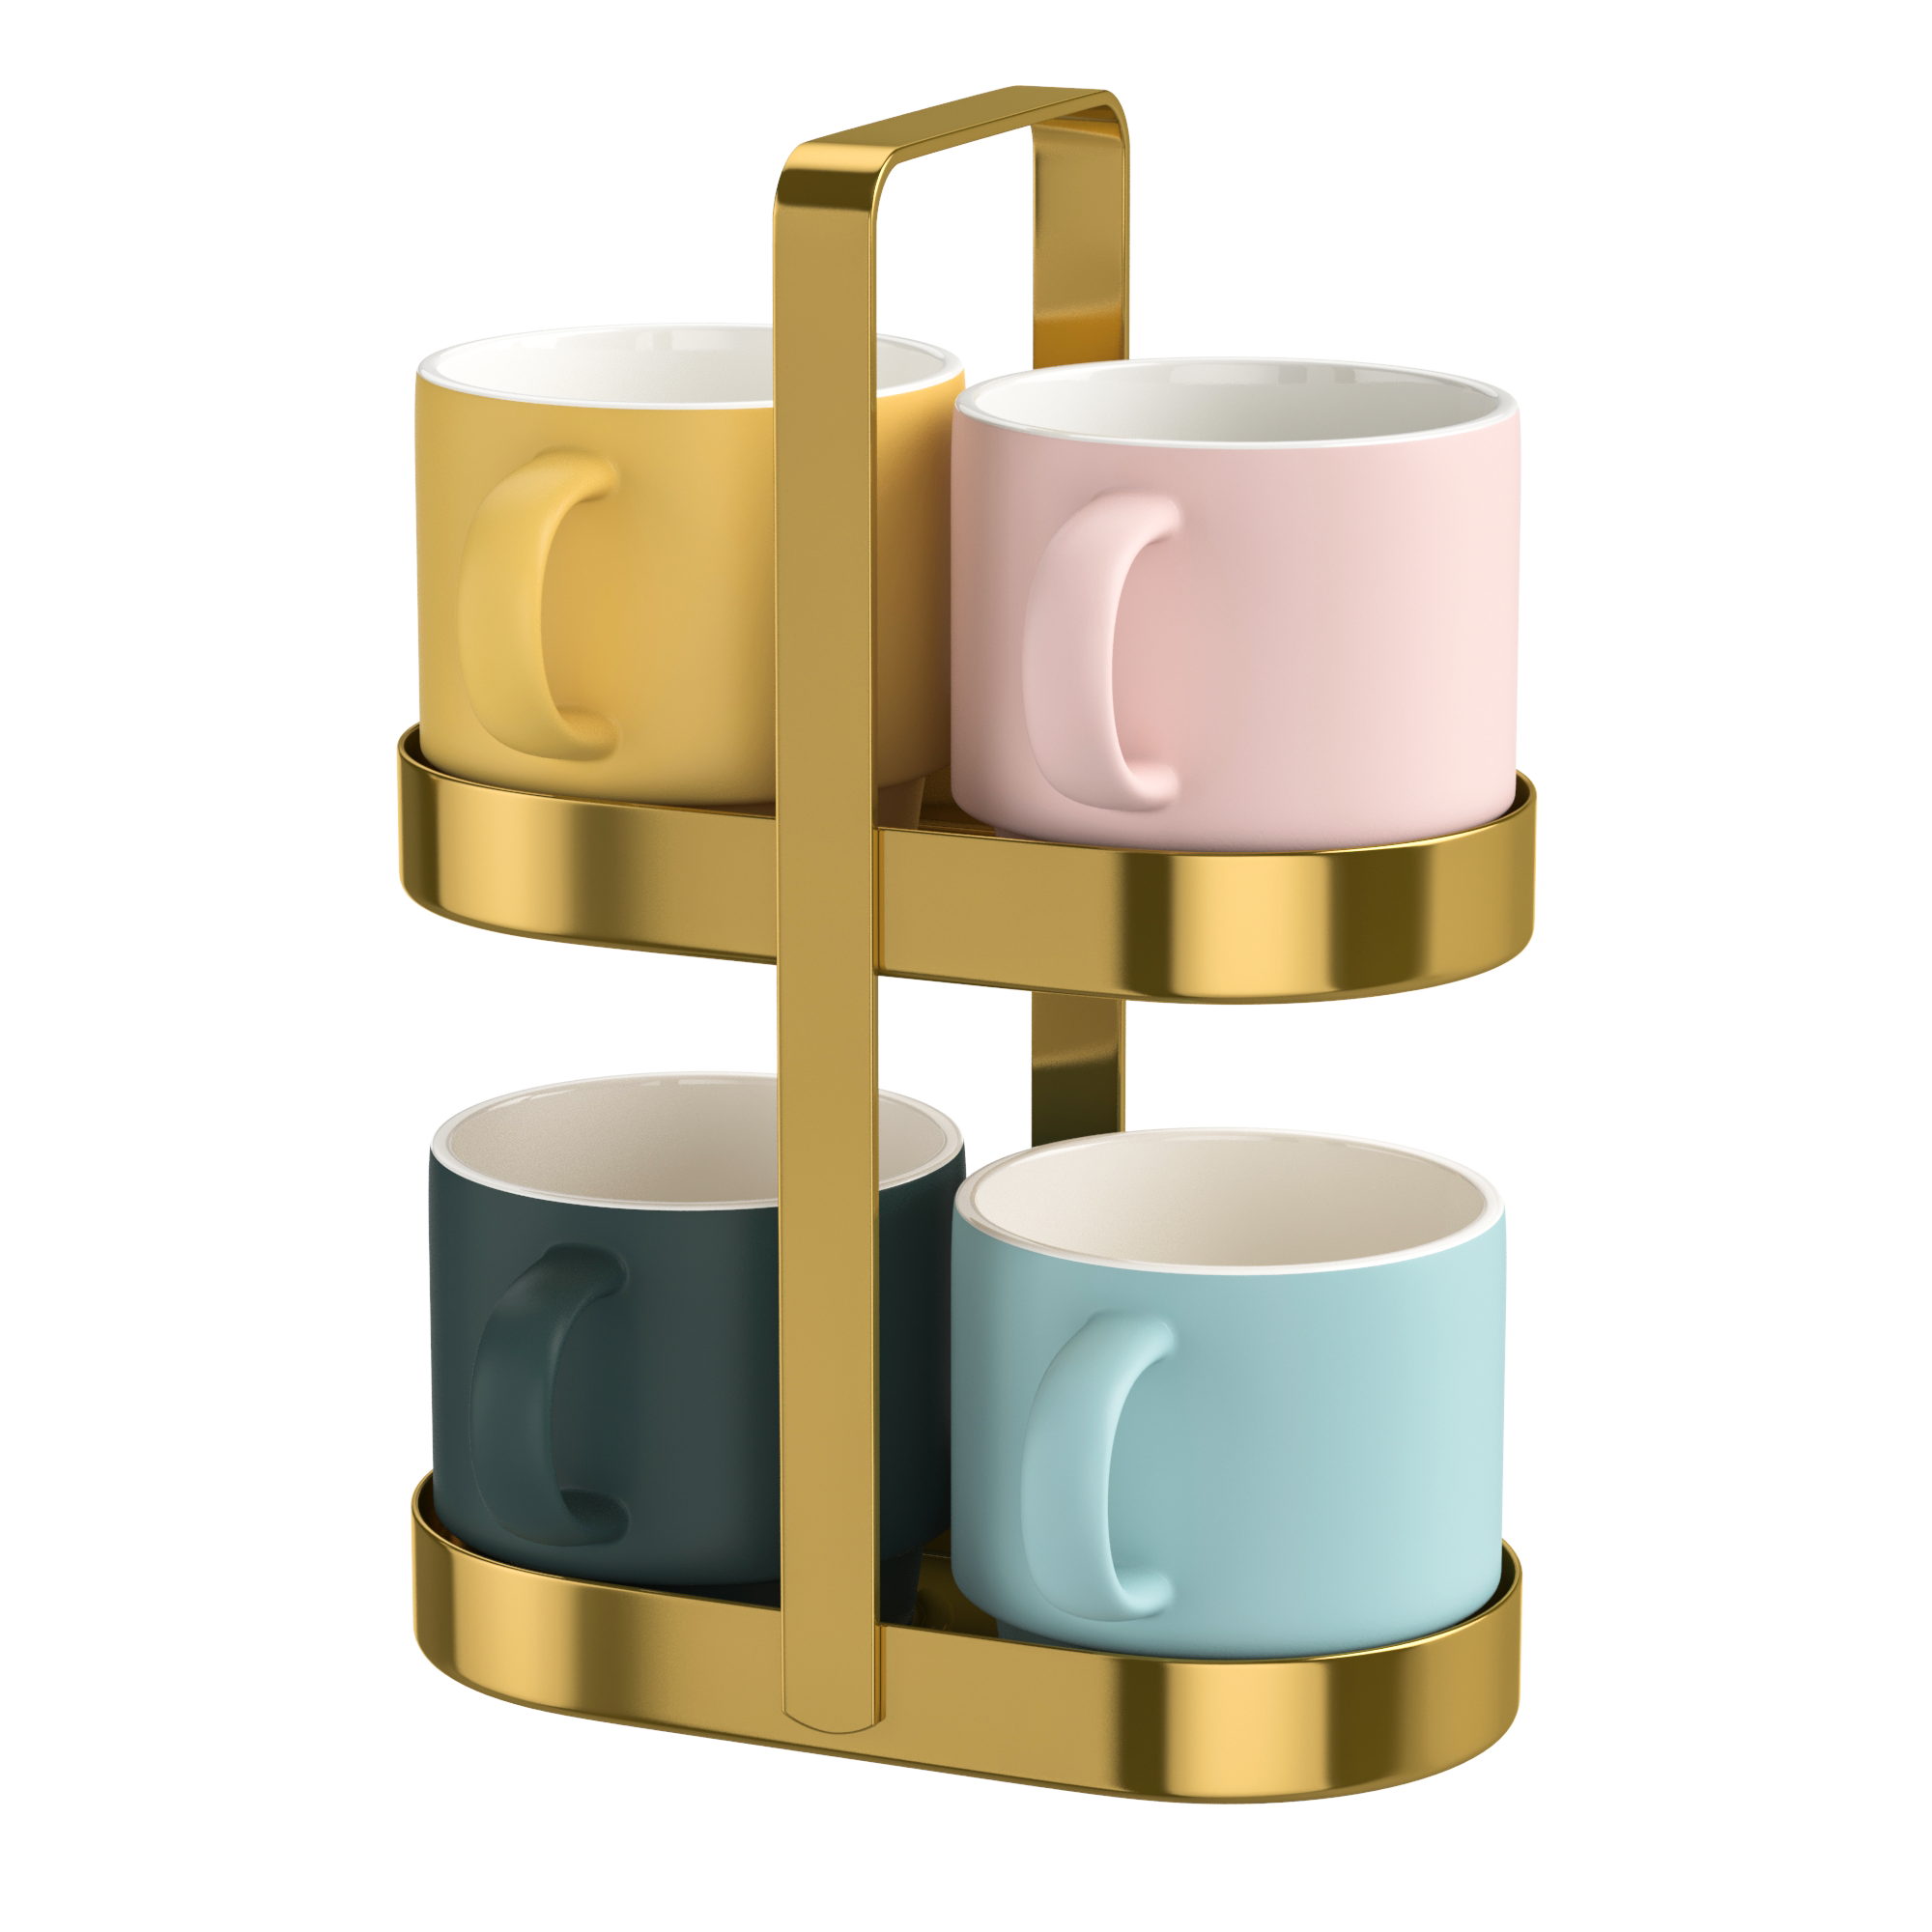 Mug Rack with 4 mugs